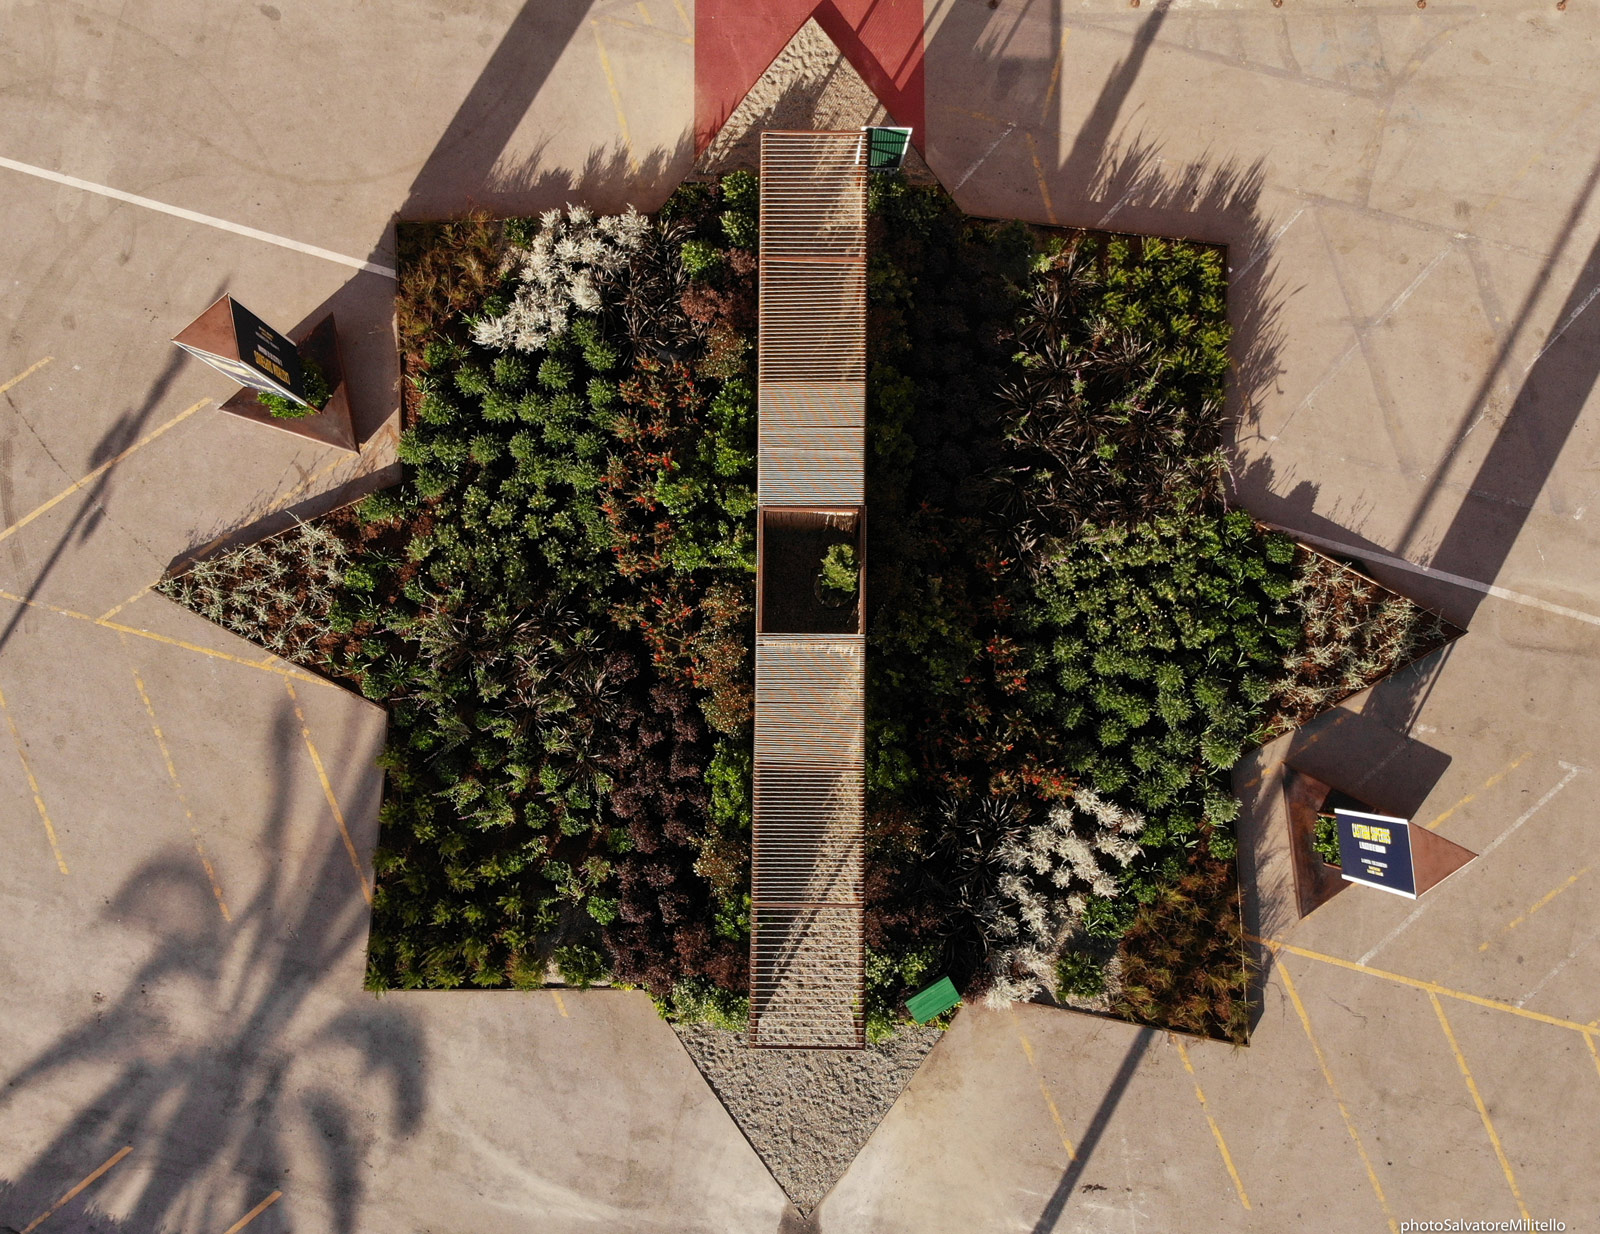 Passage to Mediterranean, lÂ’installazione di un giardino culturale dinamico su piazza del Parlamento vista dall'alto
